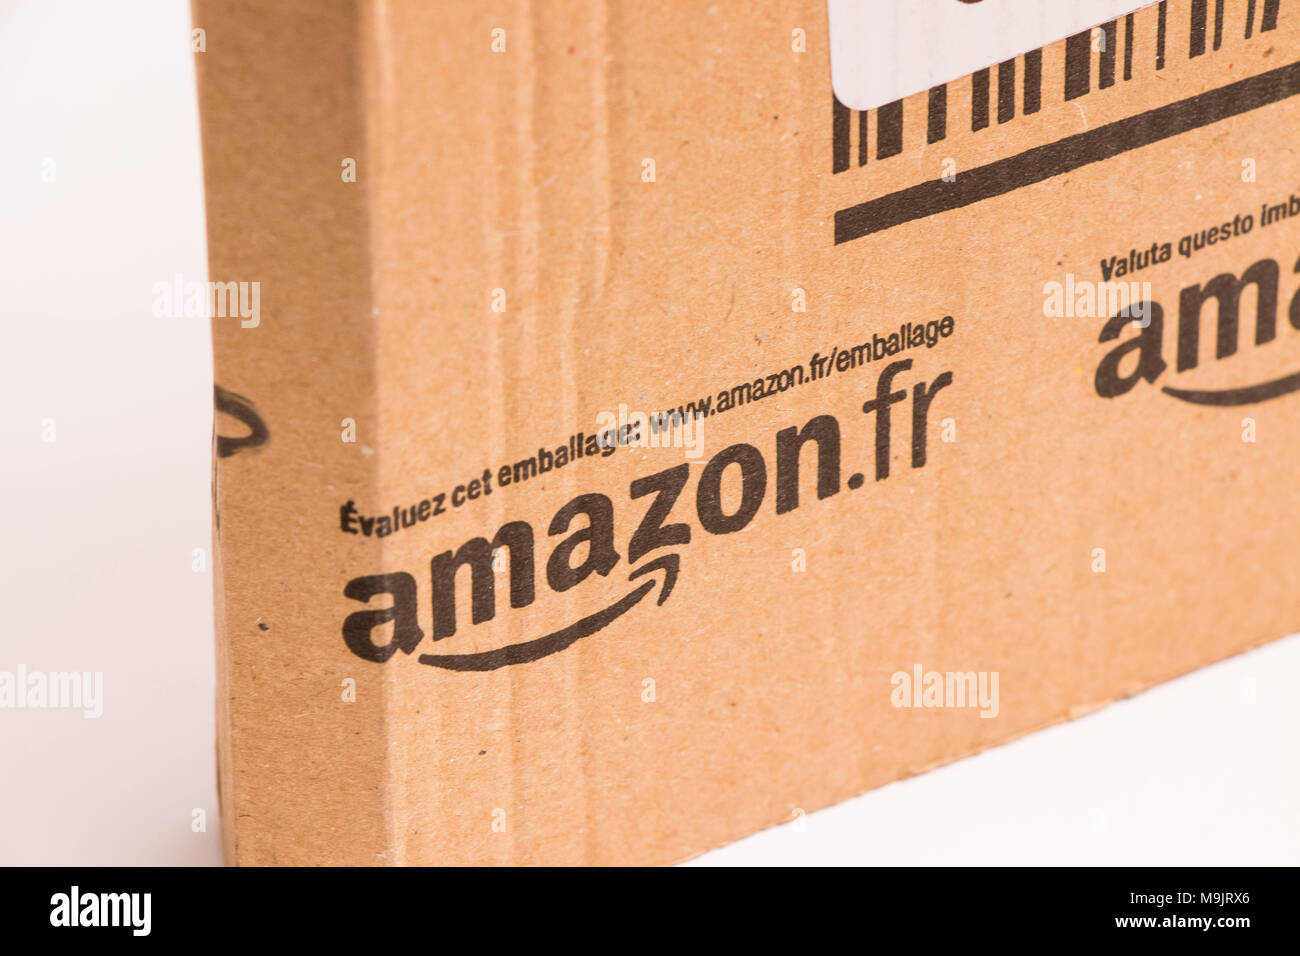 Amazon Karton Paket mail Stockfotografie - Alamy